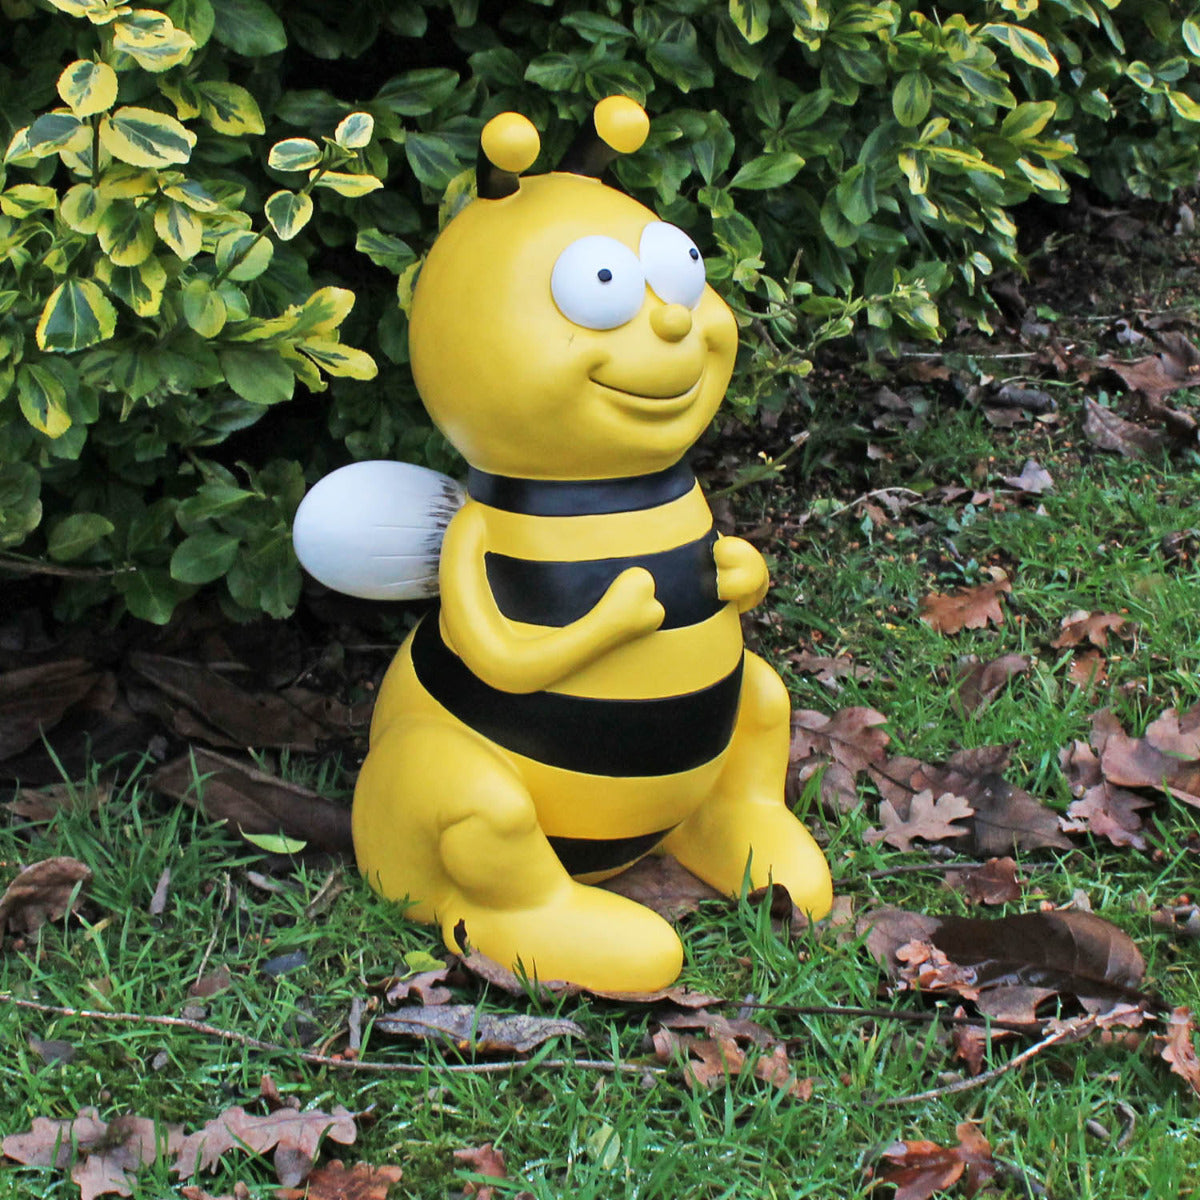 Bienen Figur sitzend 45 cm Bienen Deko Bienen groß Gartenfigur Biene